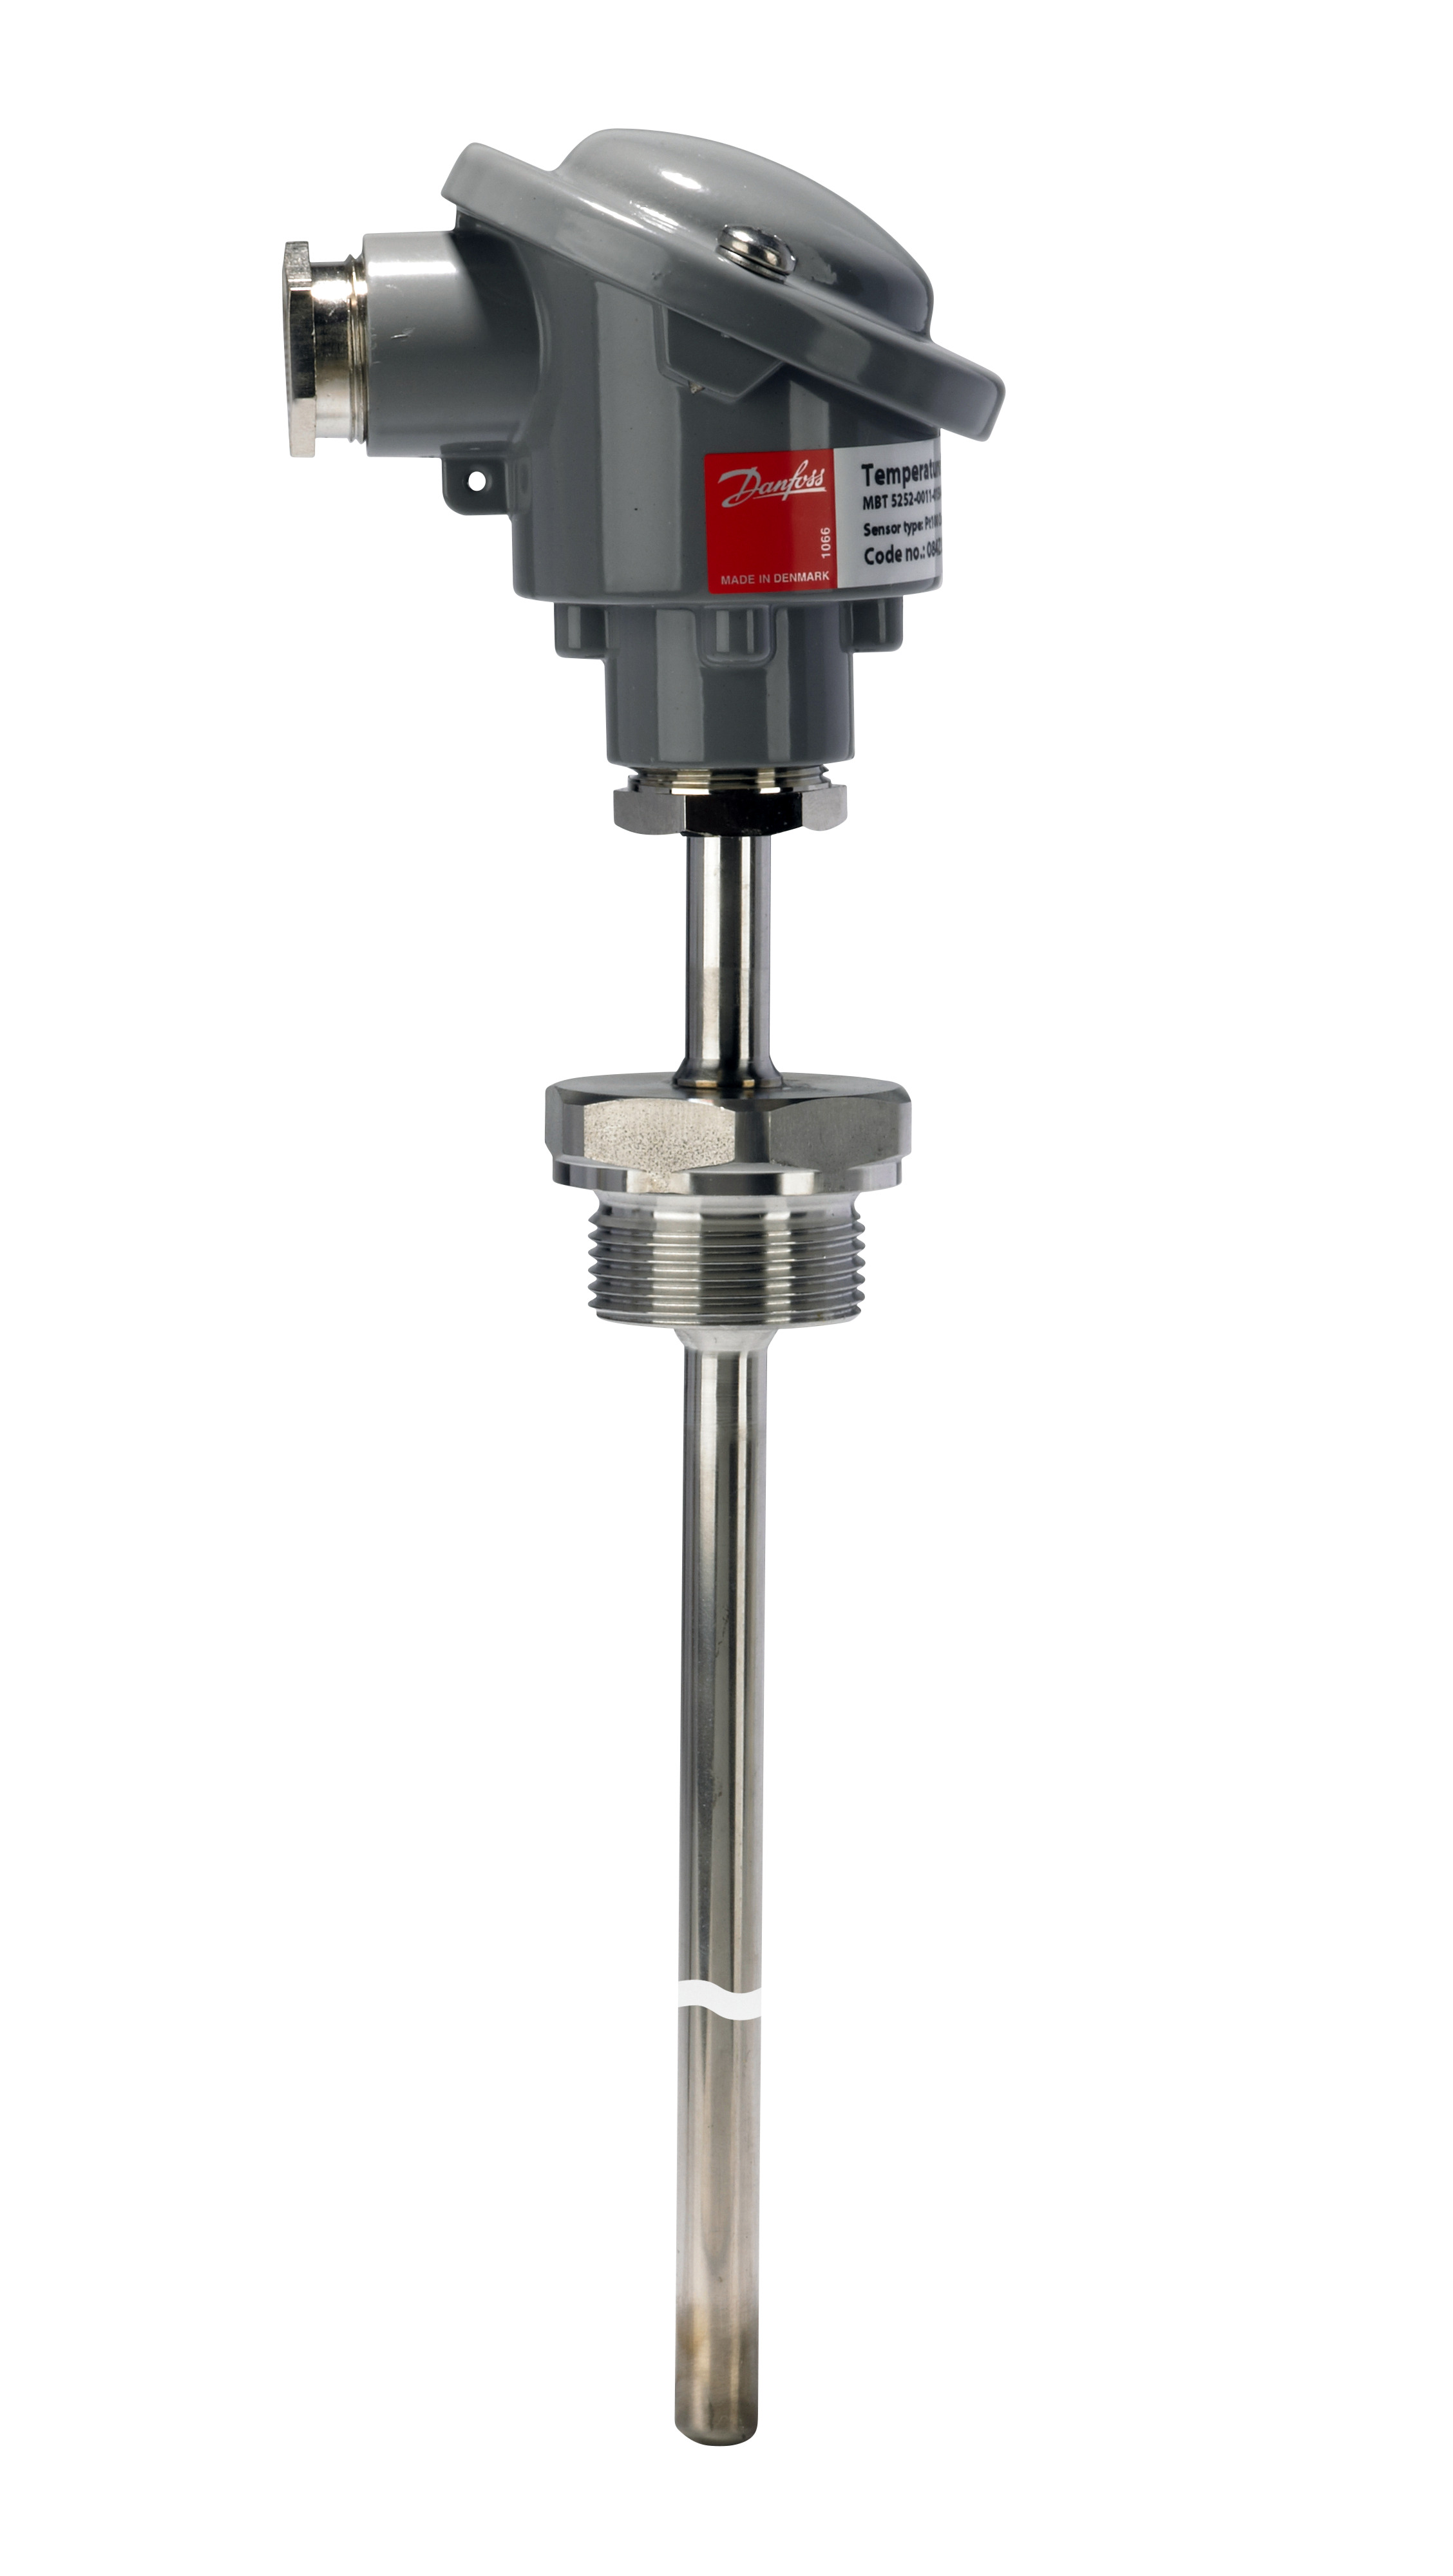 Temperature sensor, MBT 5252, 50 mm, G1/2, ISO 228-1-A